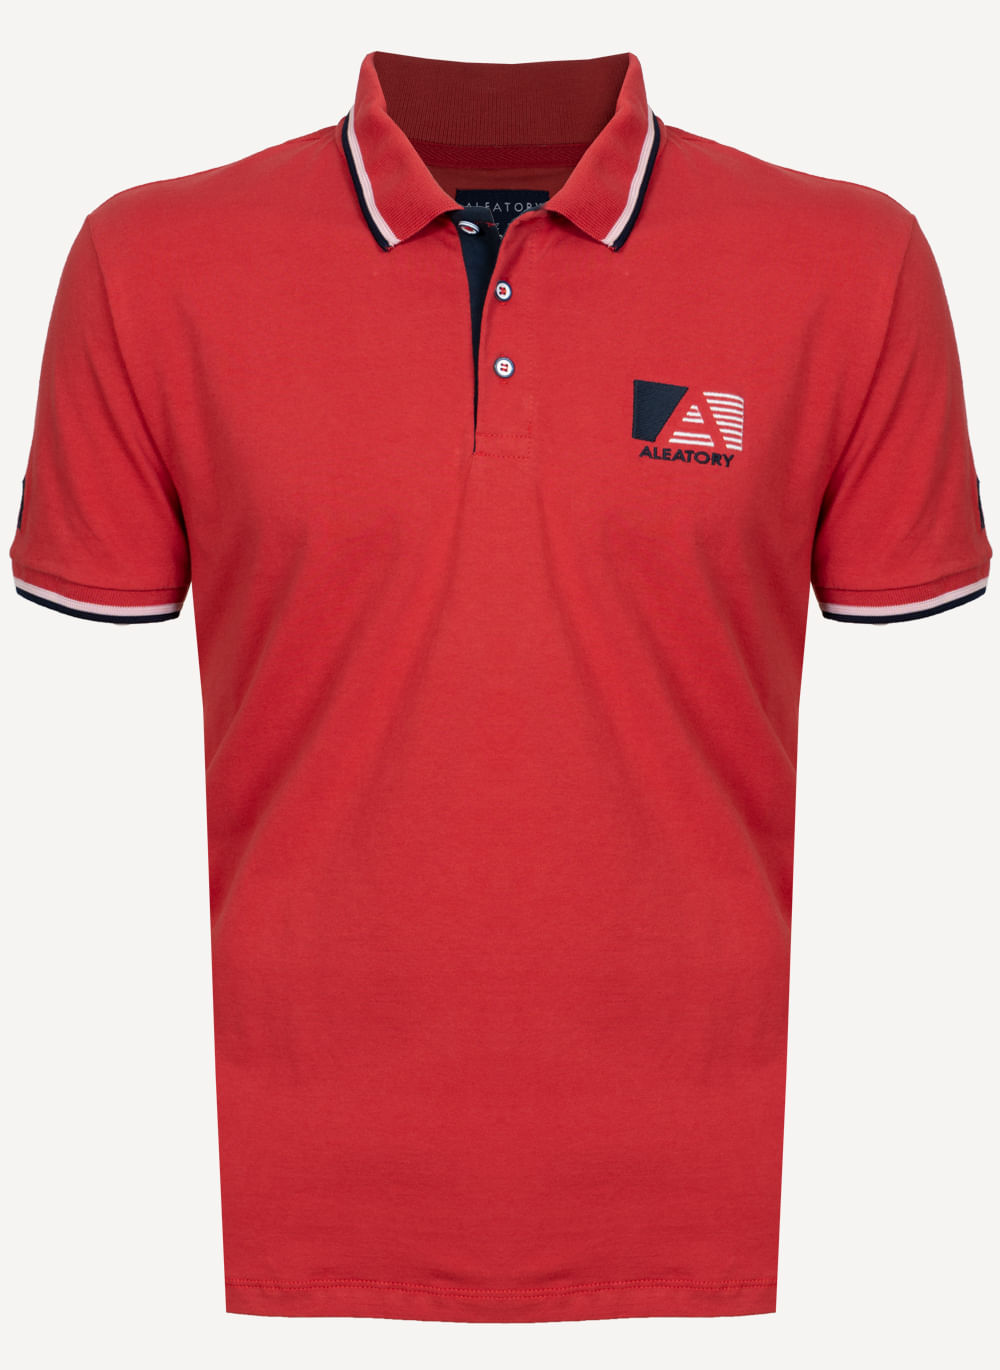 Camisa-Polo-Aleatory-A-Team-Vermelha-Vermelho-P